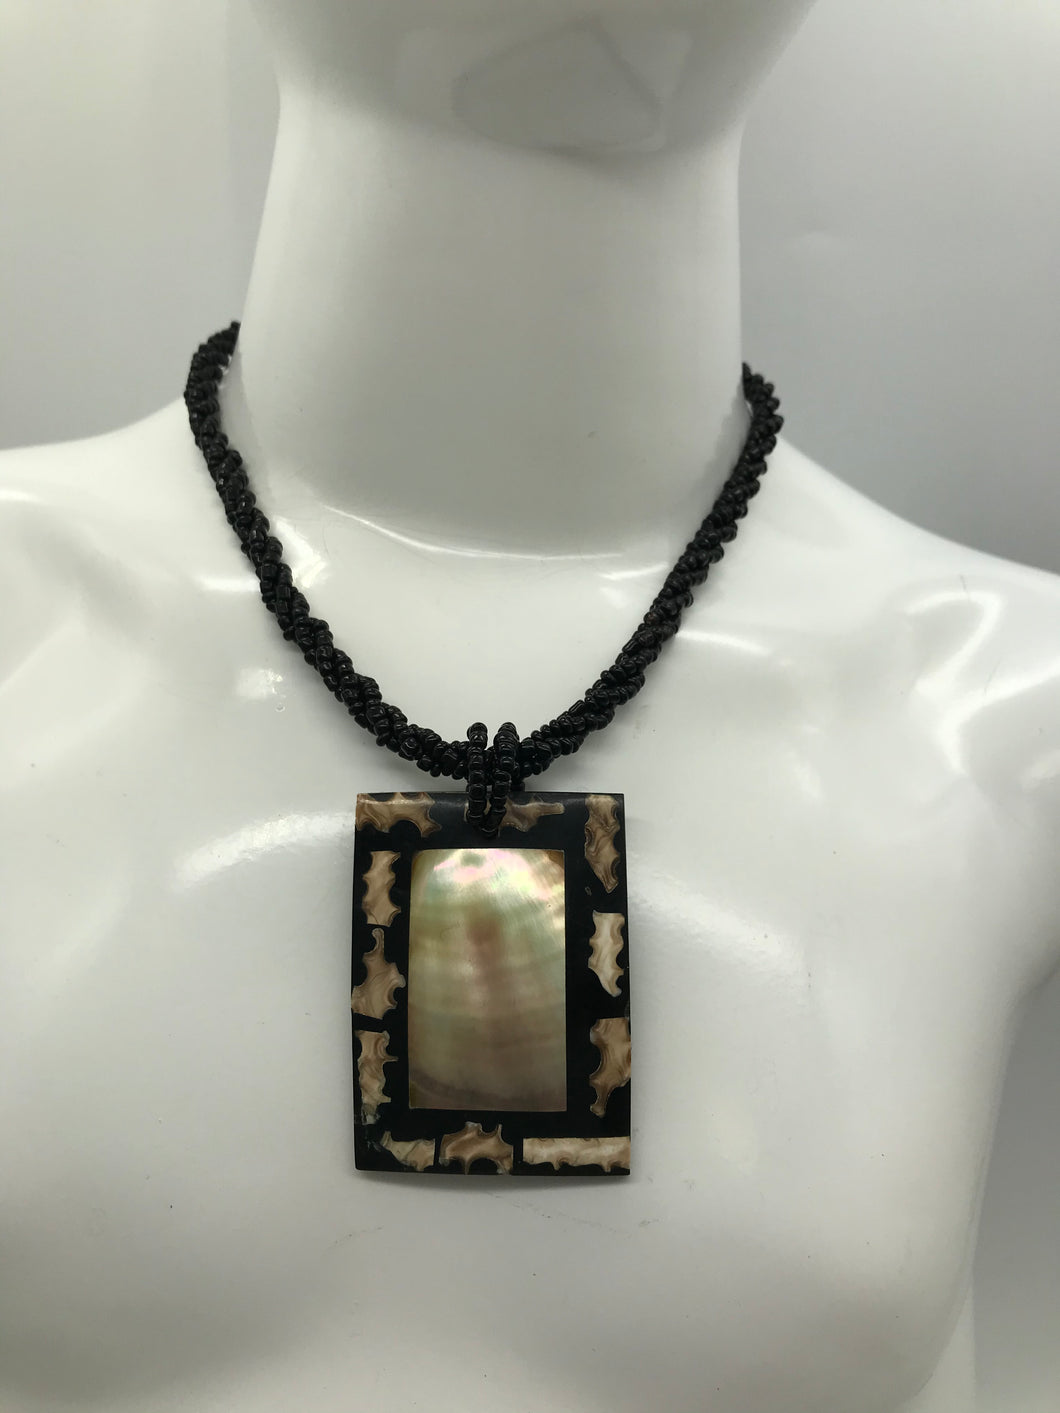 Perlenkette mit Holzanhänger, Afrikanischer Look, quadratischer Anhänger, Perlsmuttfarben